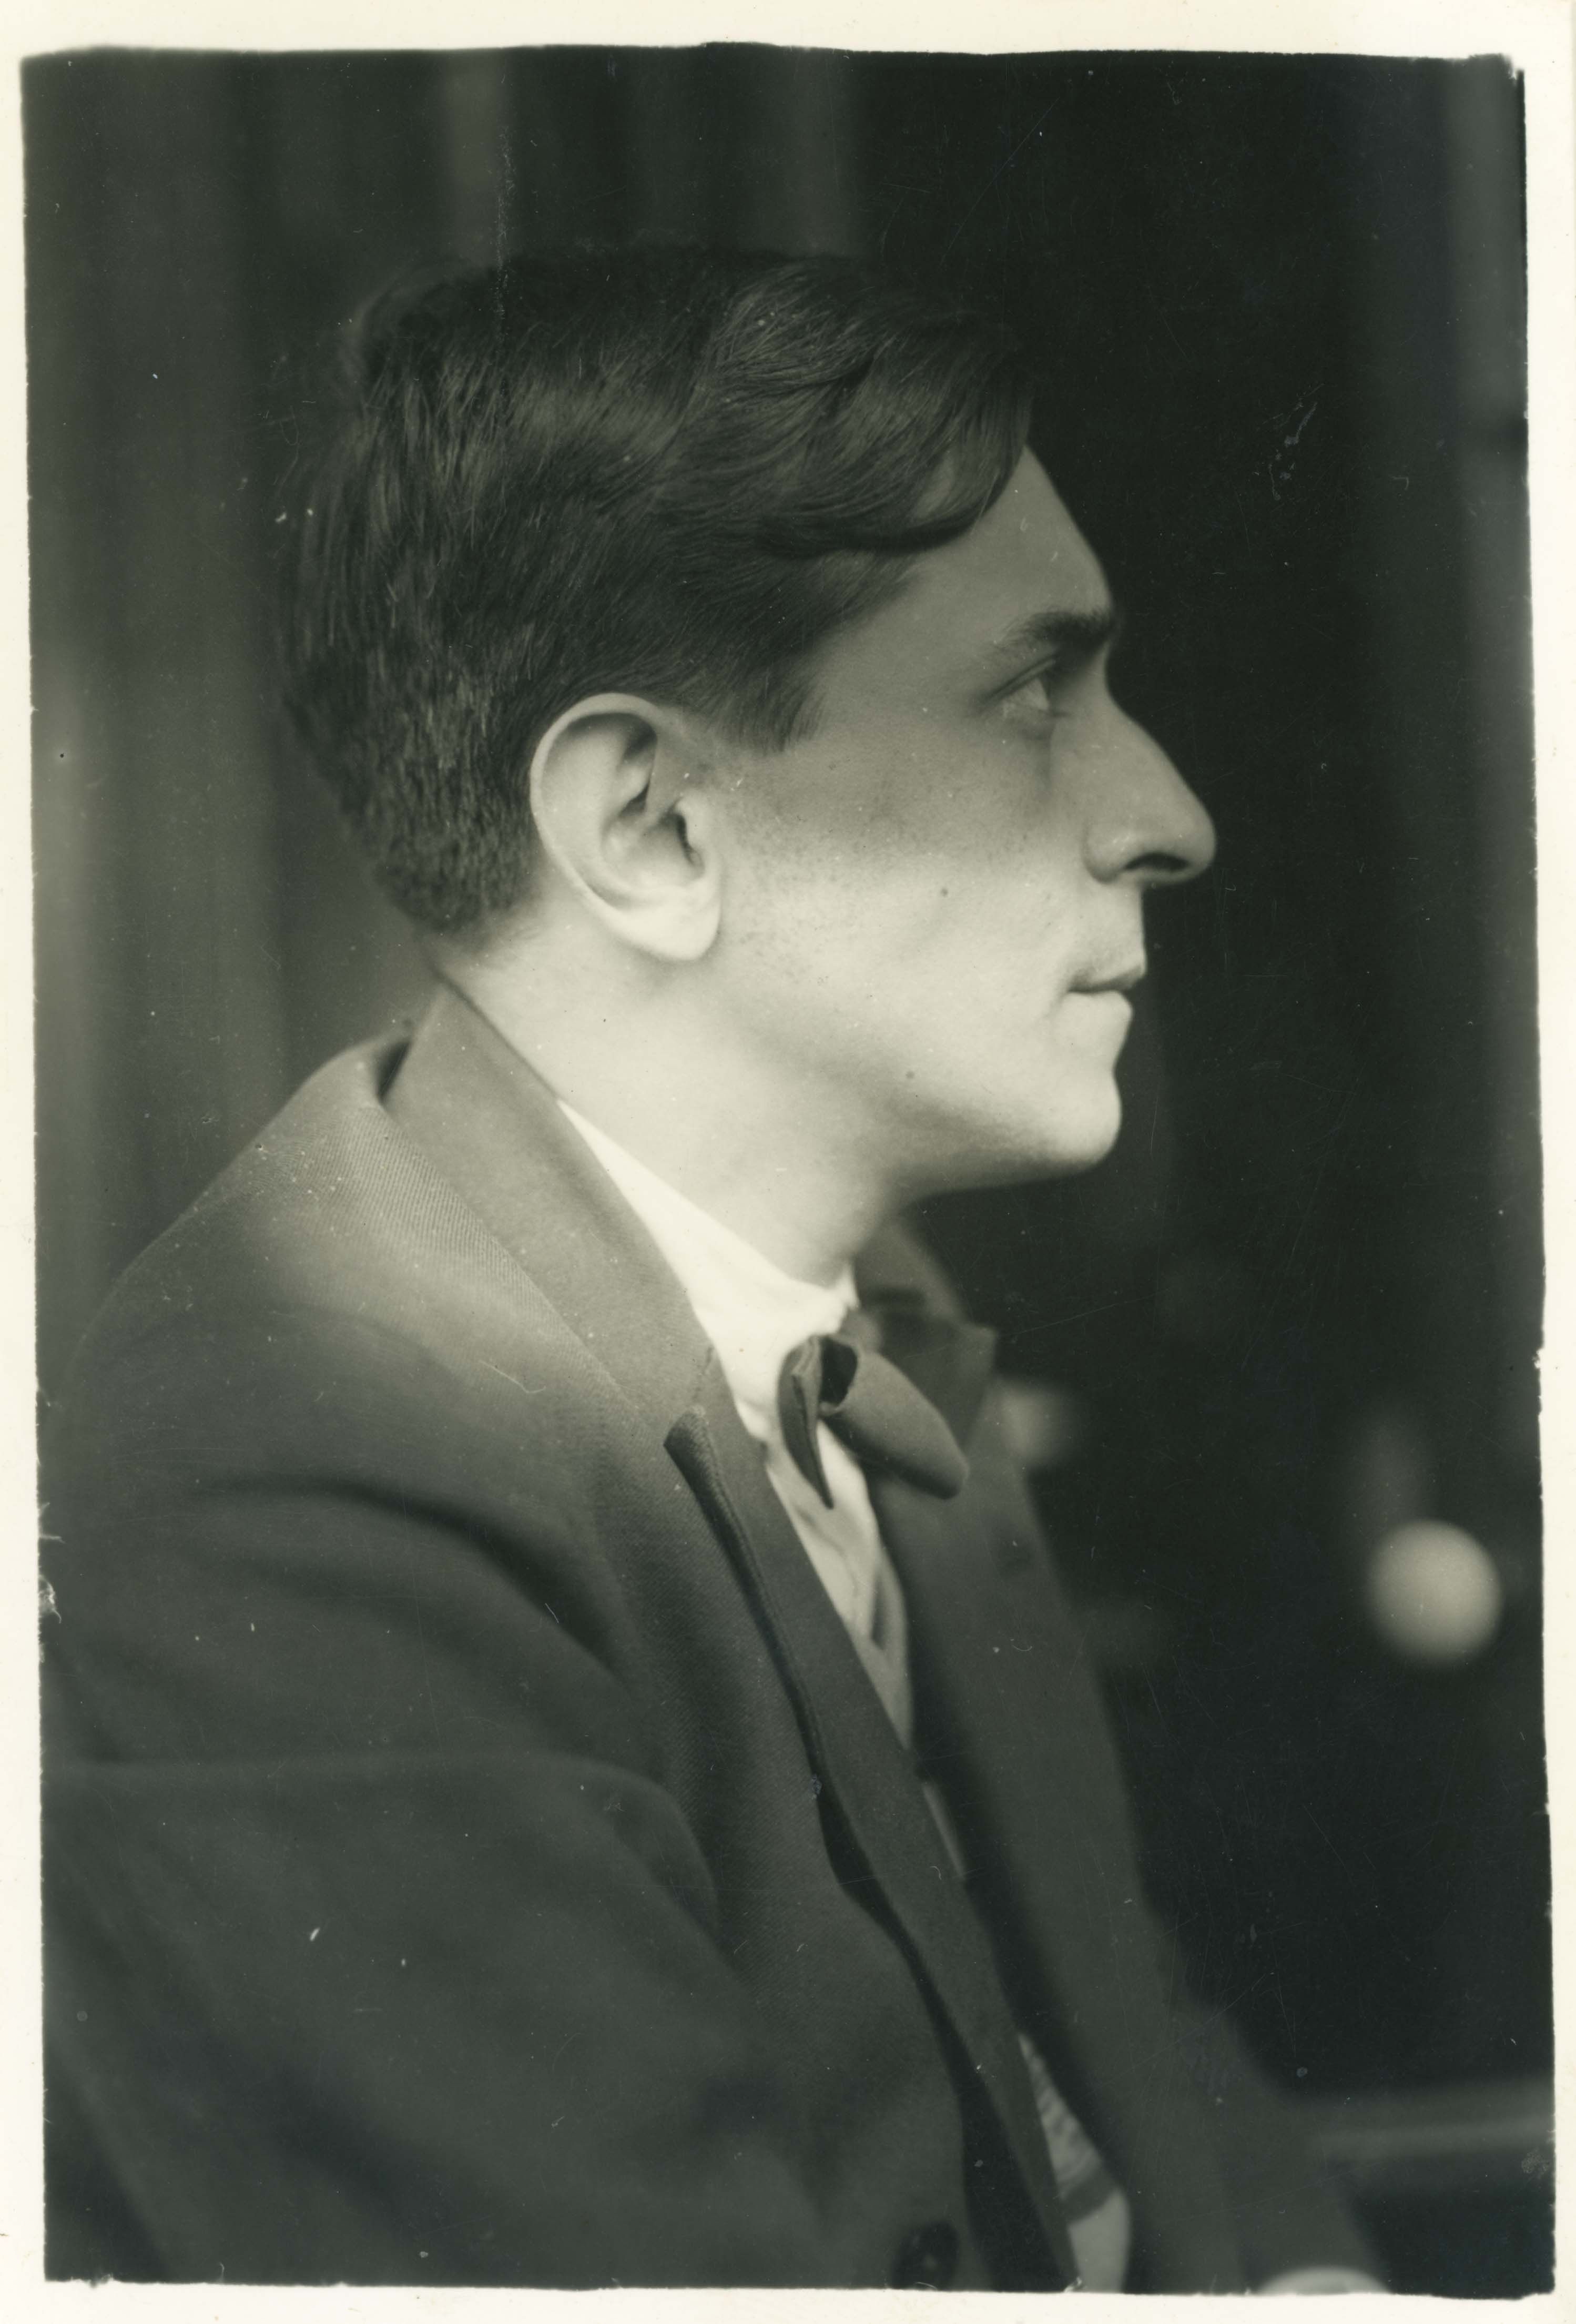 José Carlos Mariátegui, 1929